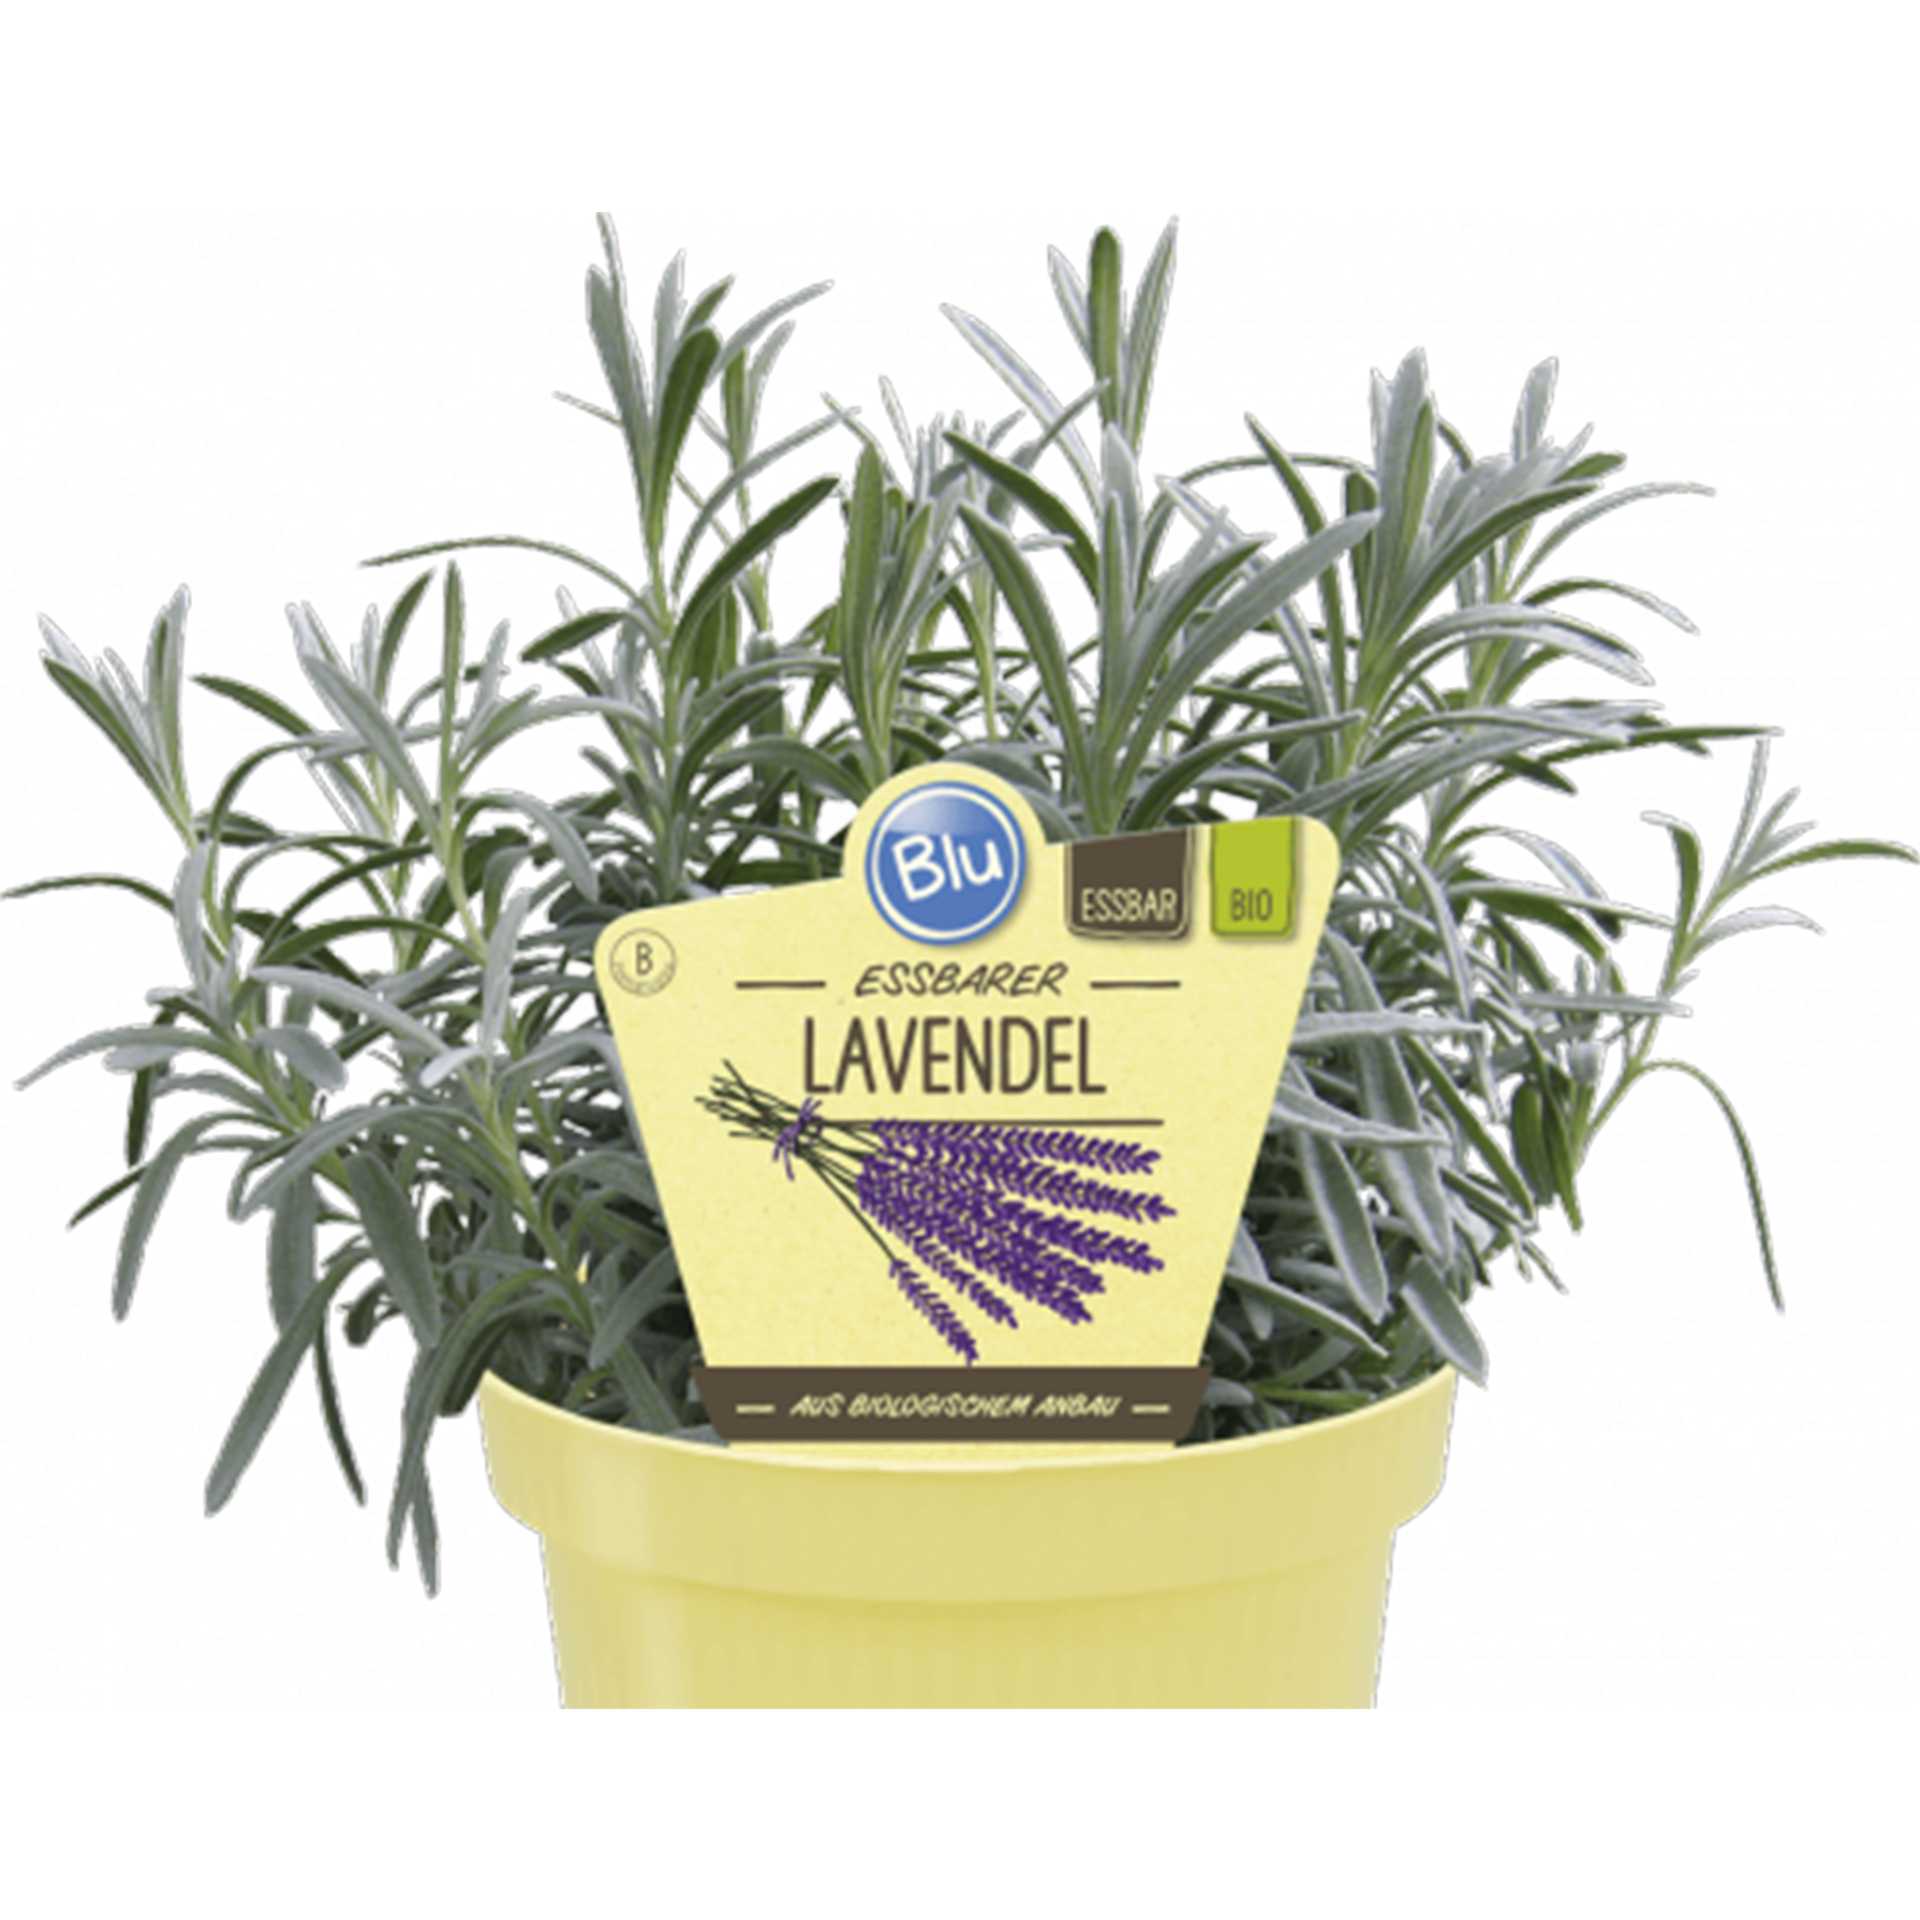 Essbarer Lavendel Kräuterpflanze Heilpflanze Duftpflanze